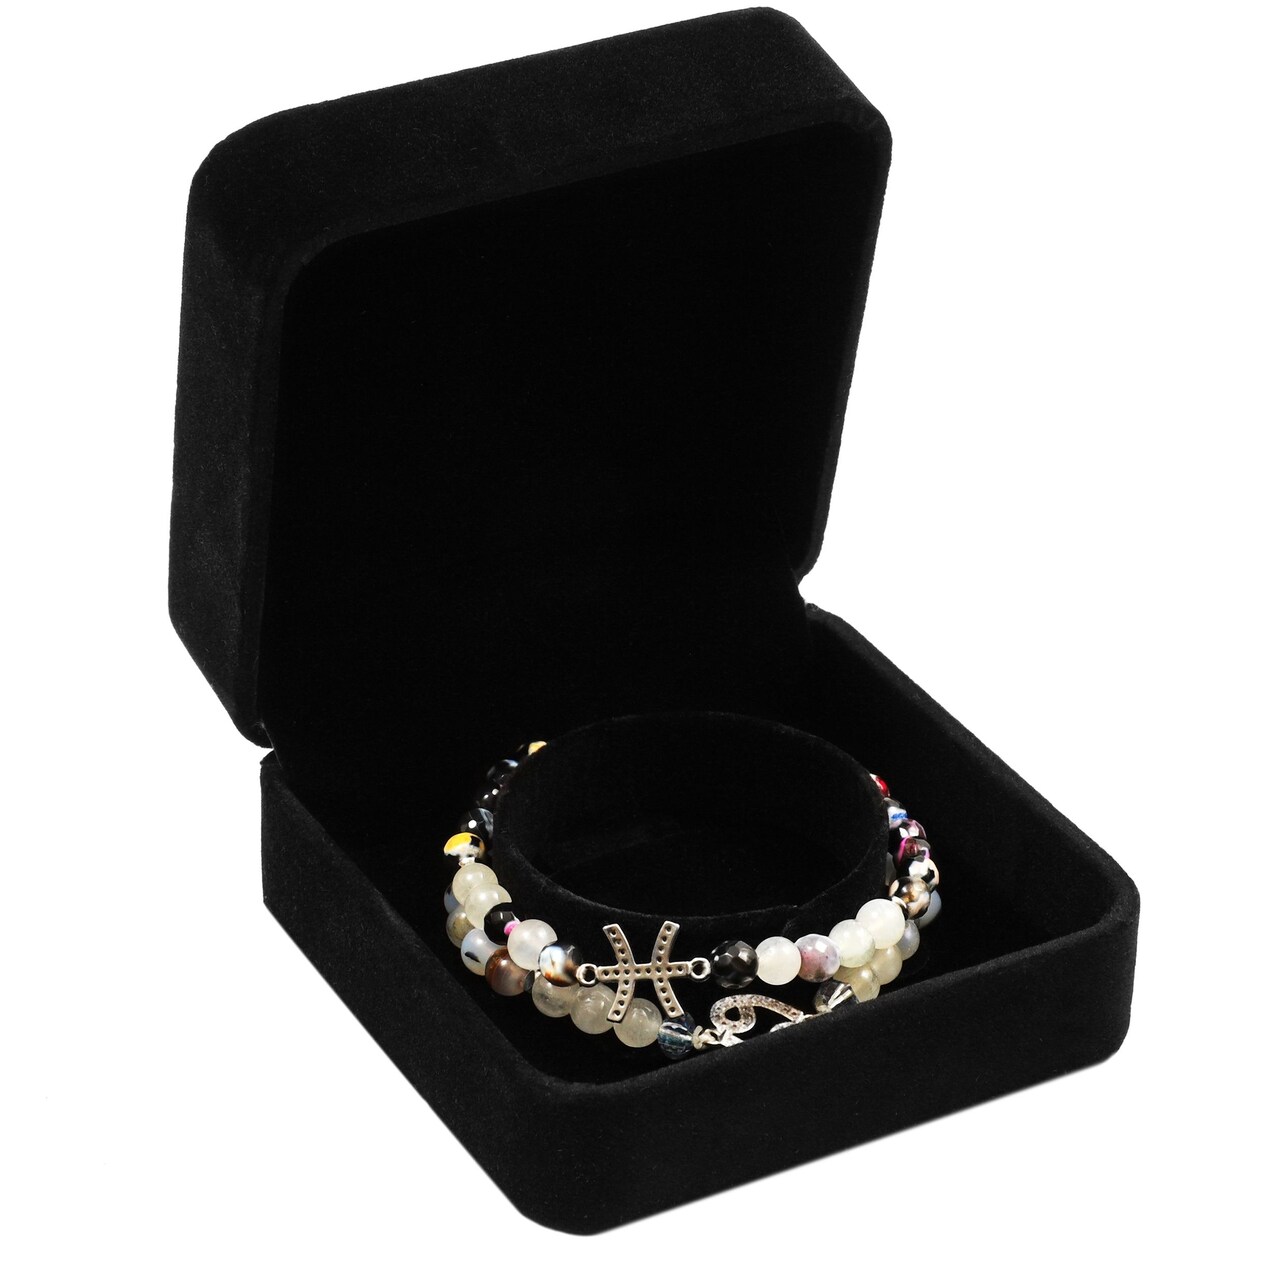 Square Velvet Jewelry Gift Box for Bracelets (Black, 3.5 x 3.5 x 1.9 In)